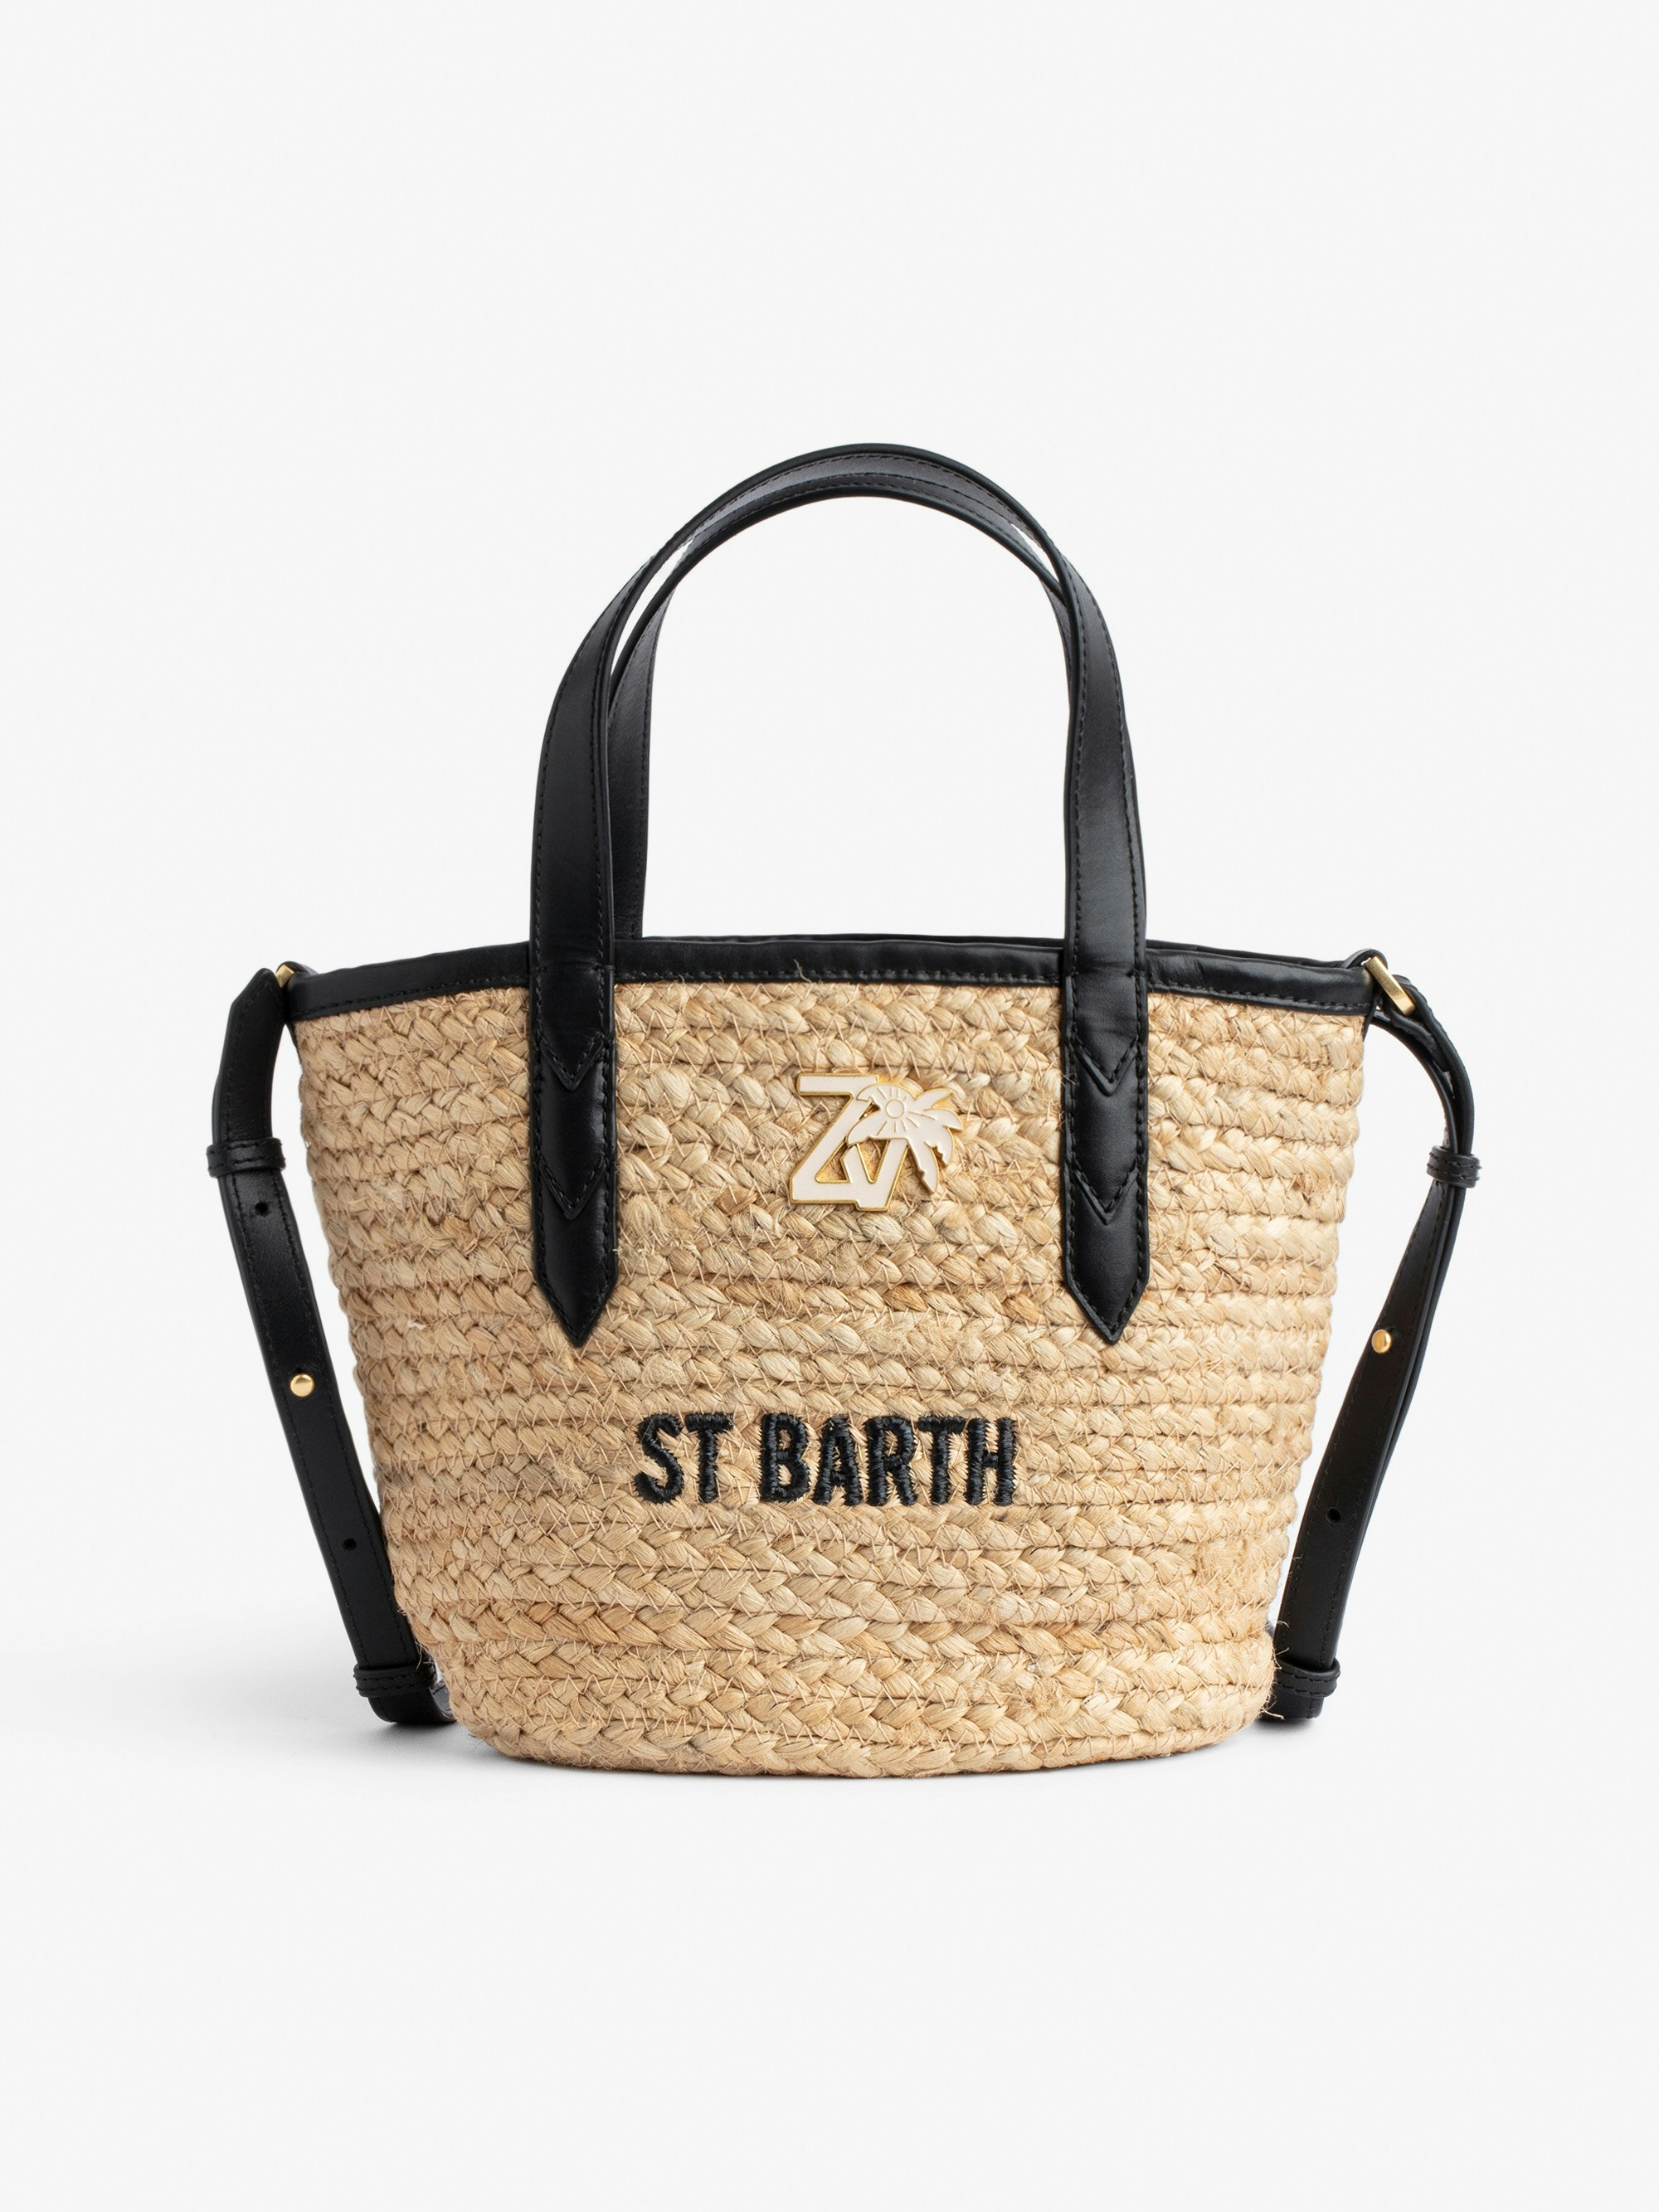 Tasche Le Baby Beach - Damen-Strohtasche mit Schulterriemen aus schwarzem Leder, „St Barth“-Stickerei und ZV-Charm